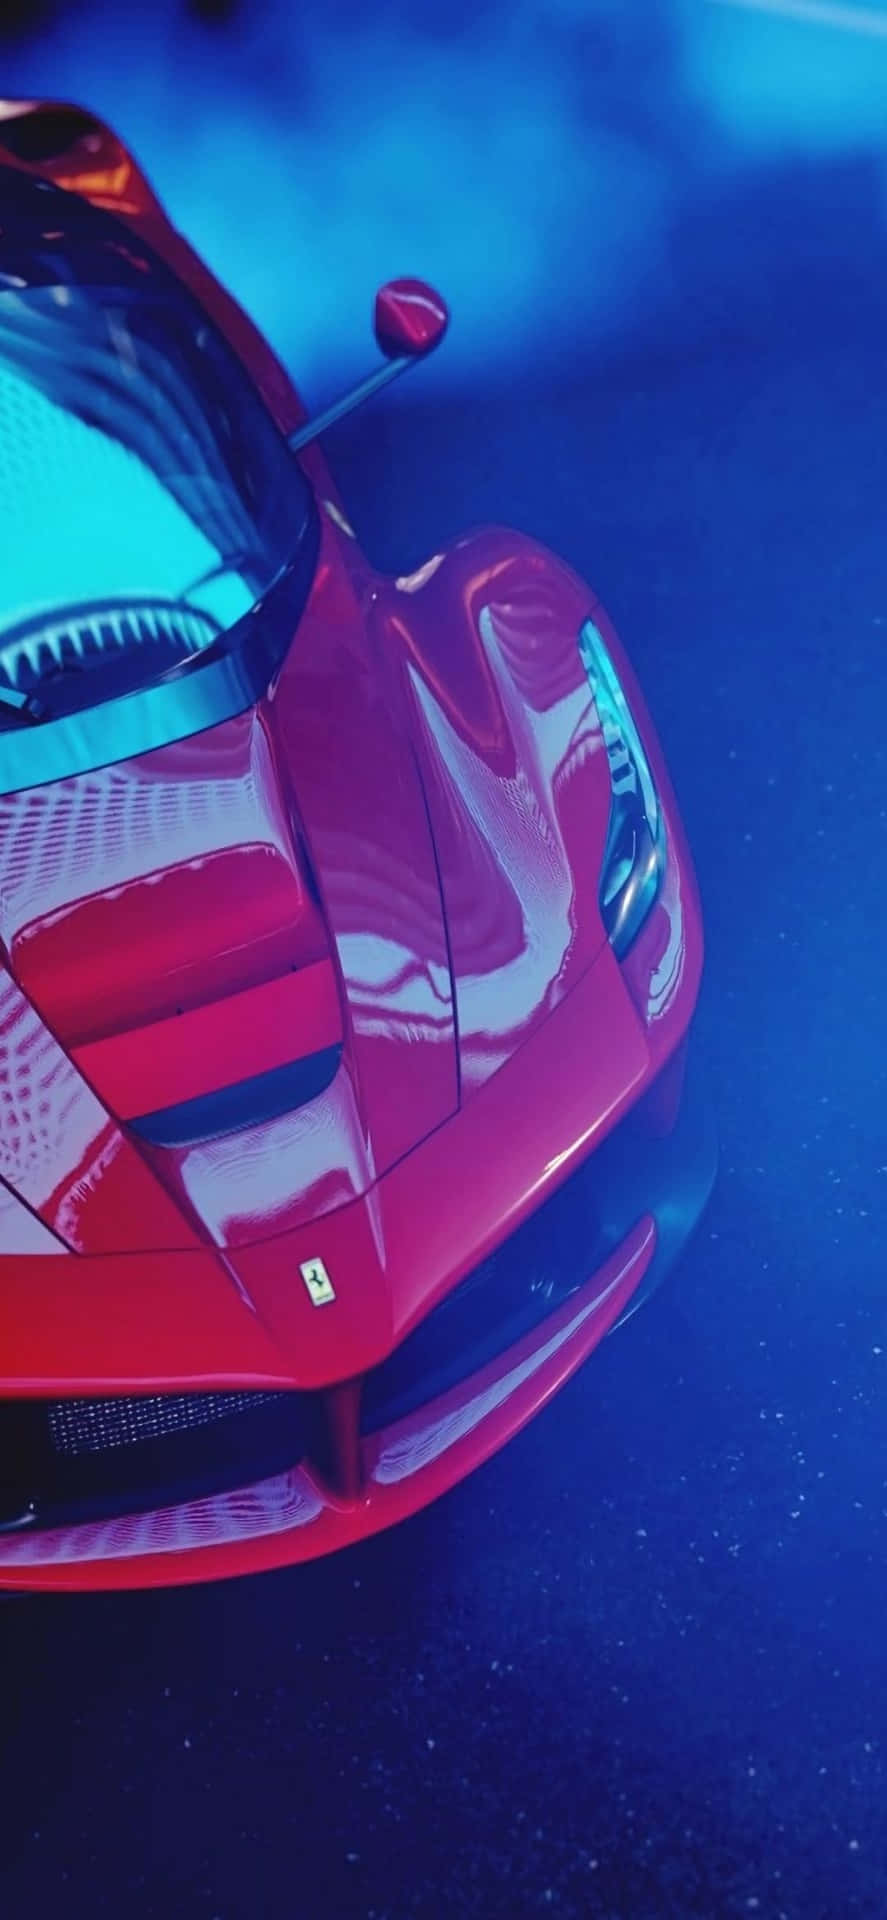 iPhone Xs Max Ferrari baggrund glanset rød Ferrari dækket med blå røg.